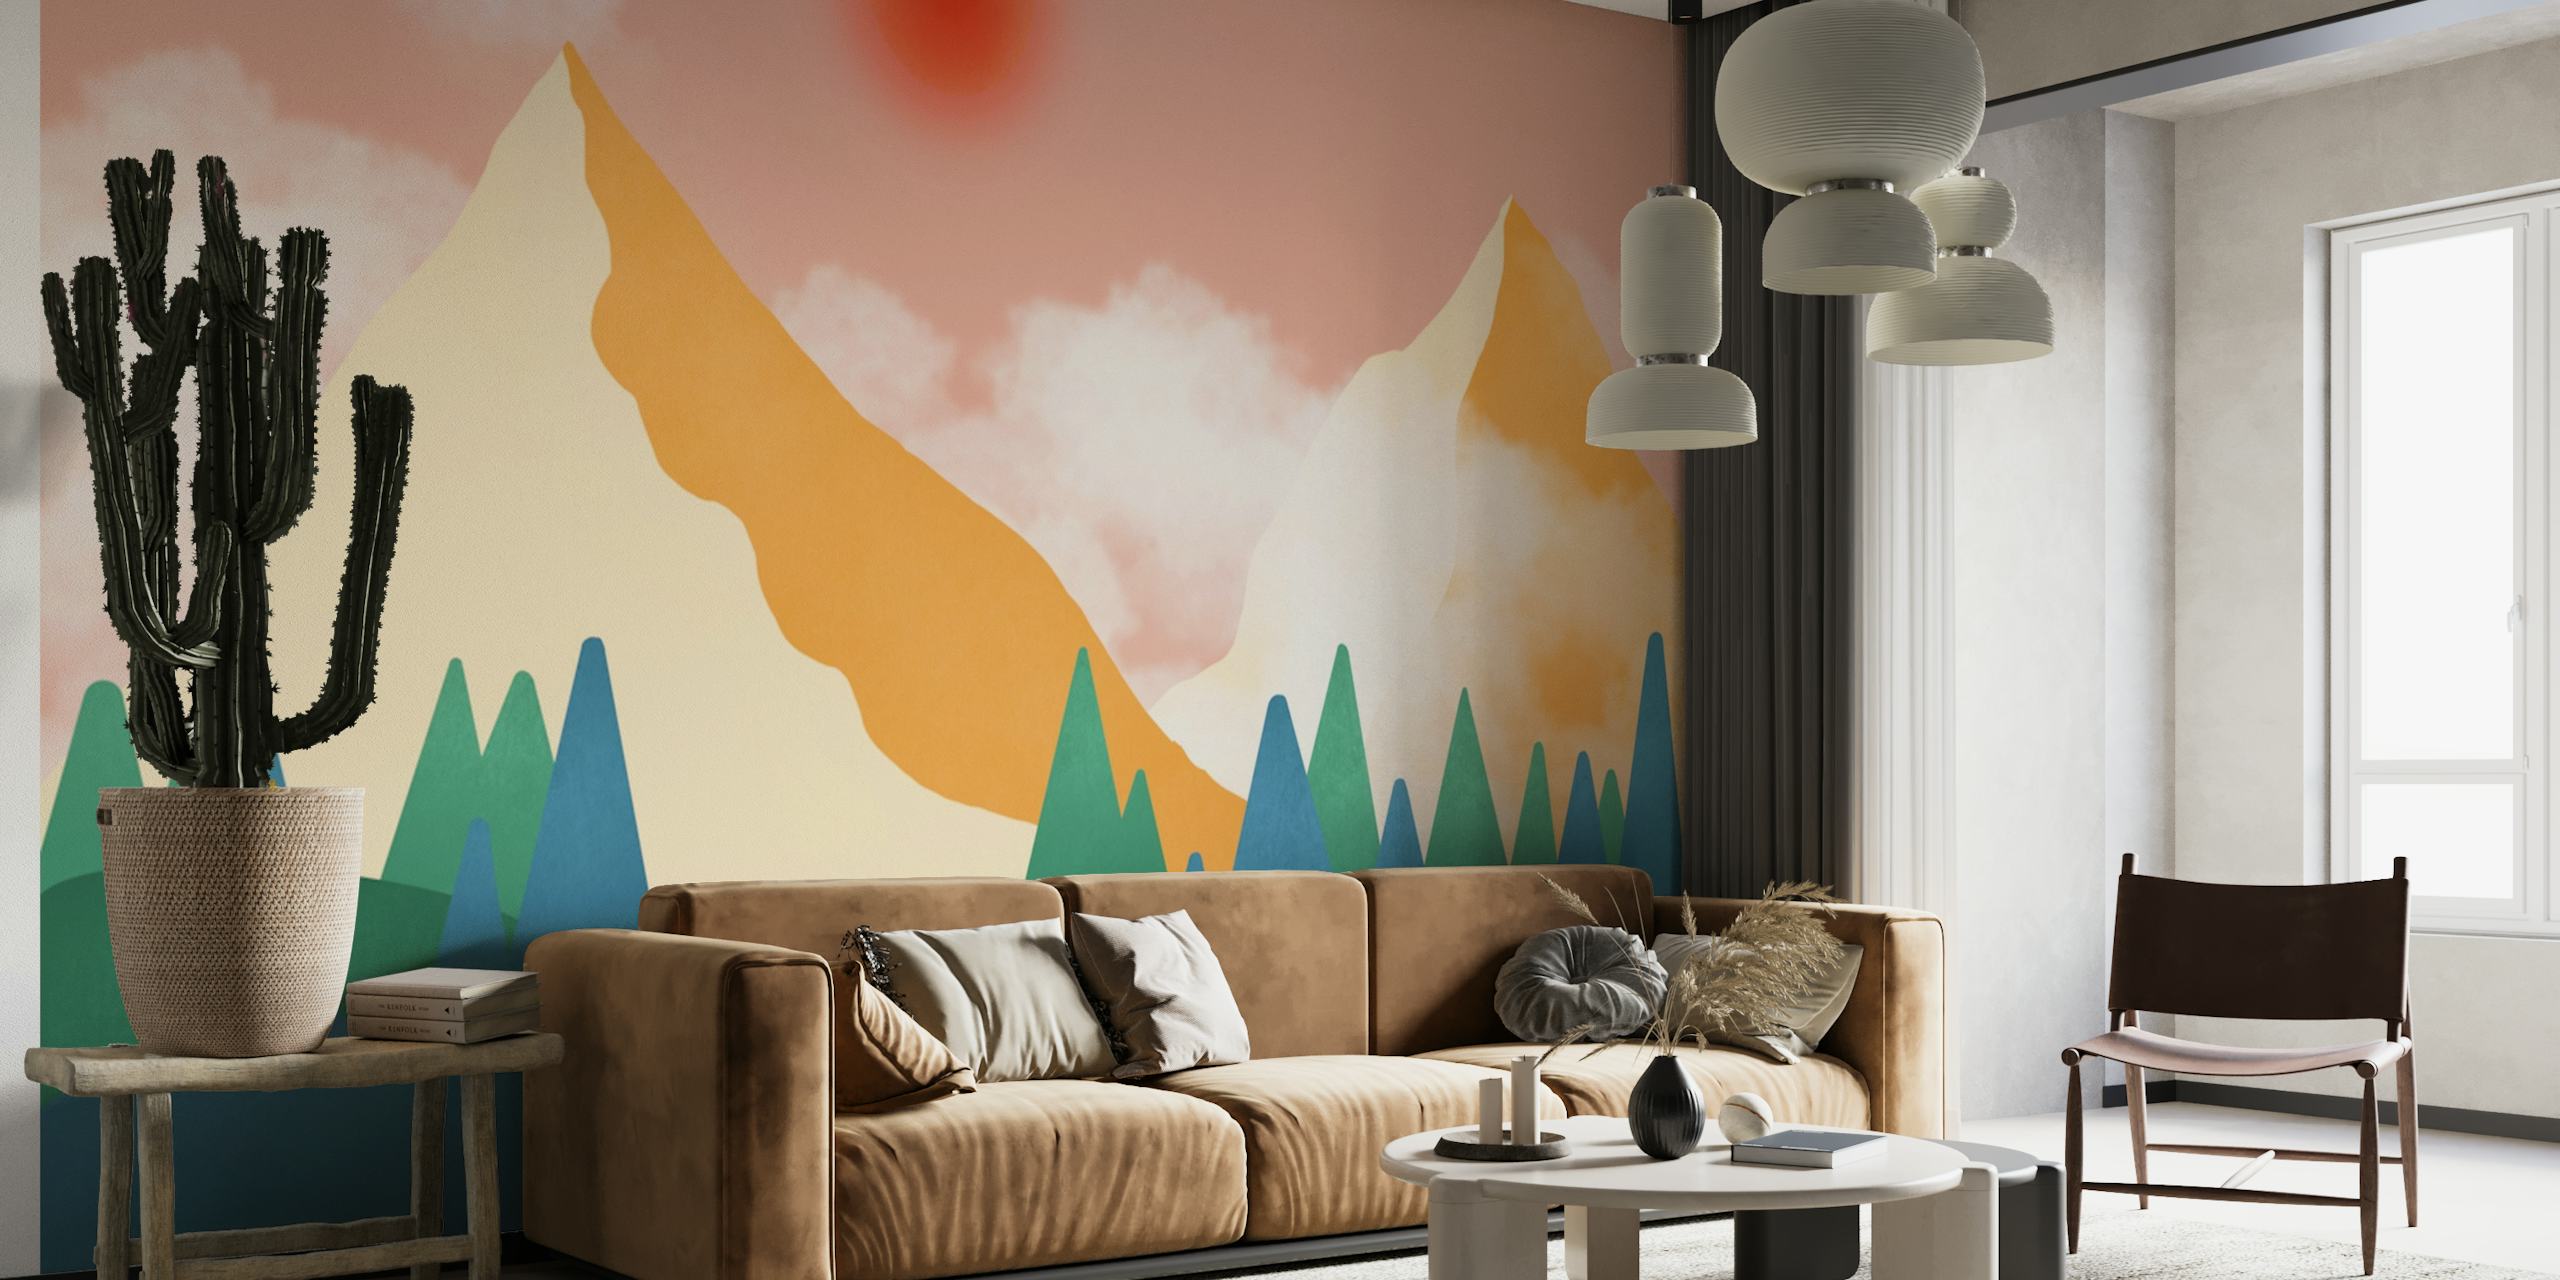 The Orange Mountains papel pintado